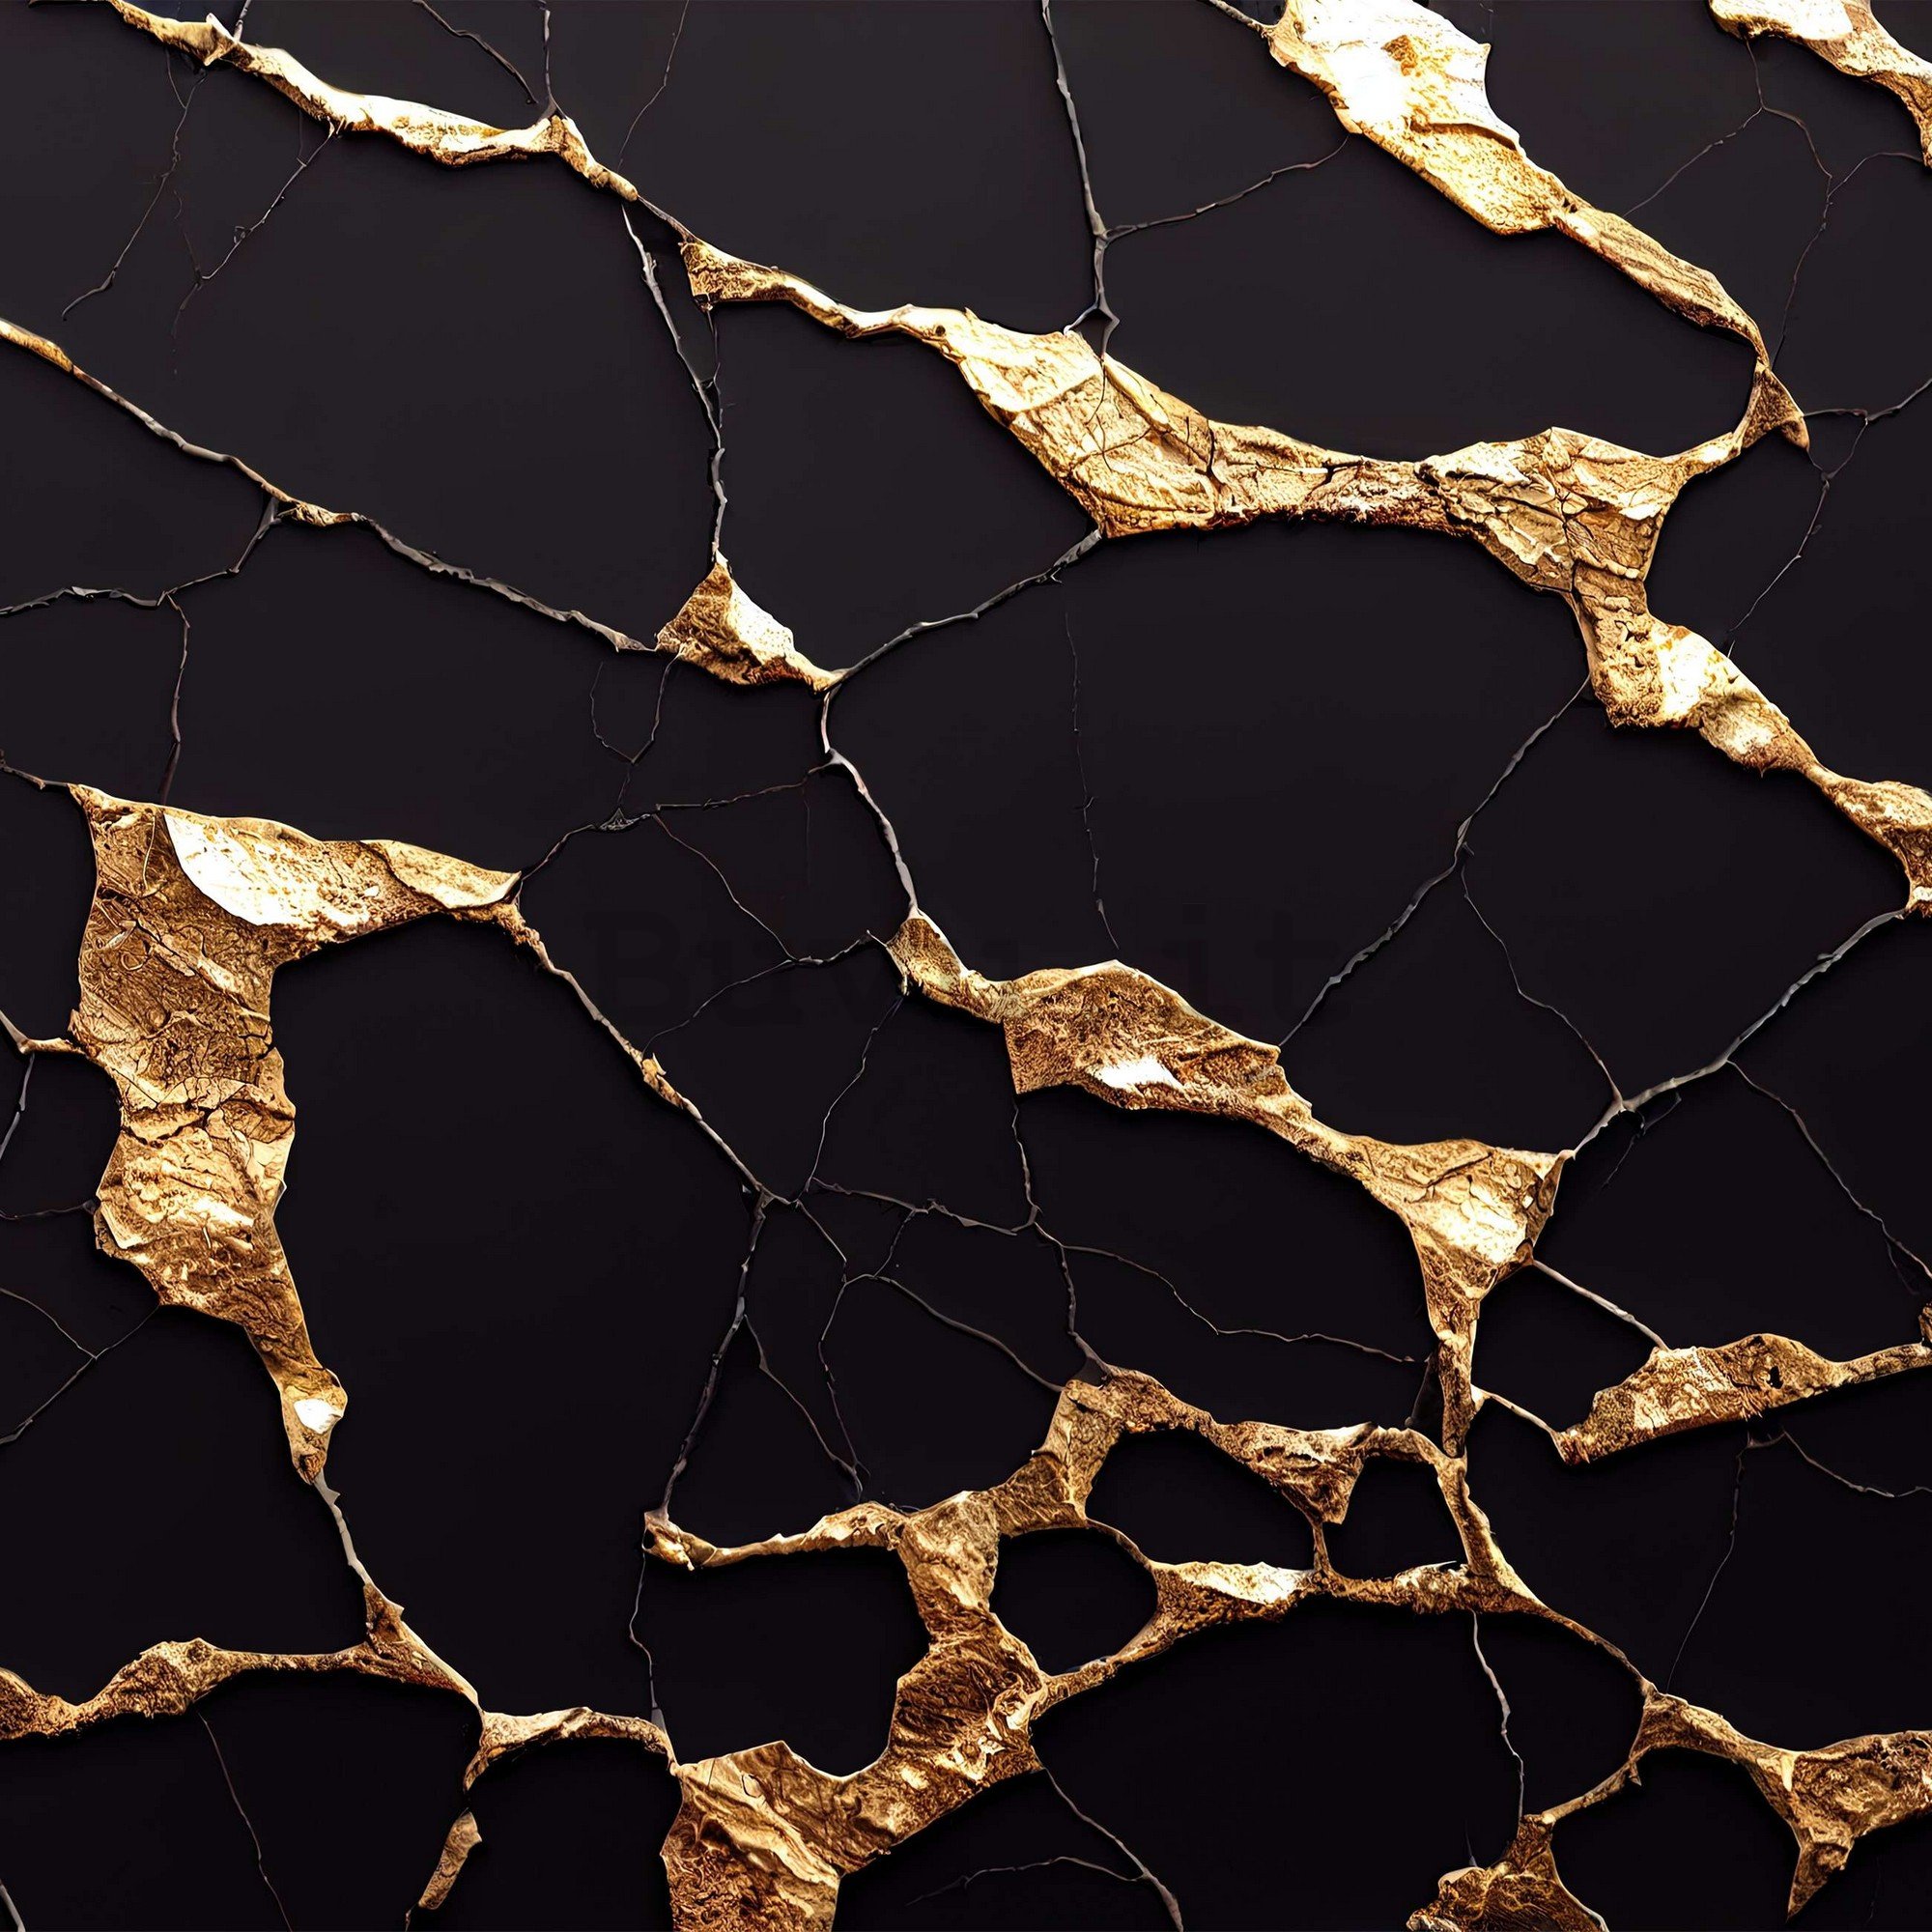 Fotomurale in TNT: Imitazione glamour del marmo dorato - 416x254 cm